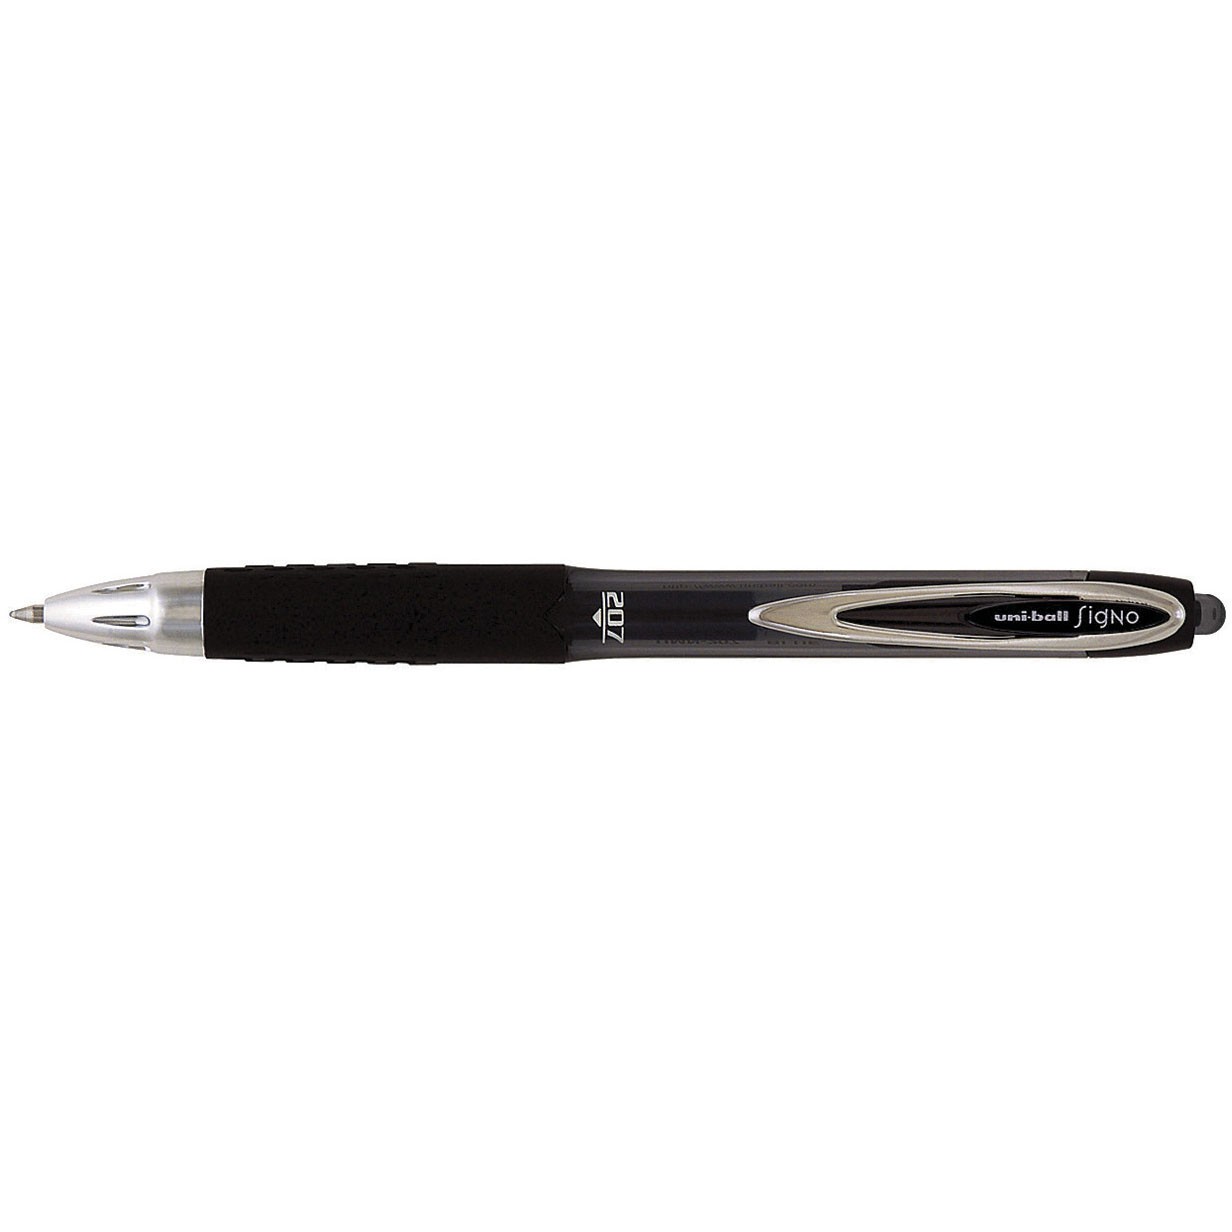 Uni-ball Signo 207 pen med 0,4 mm stregbredde i farven sort